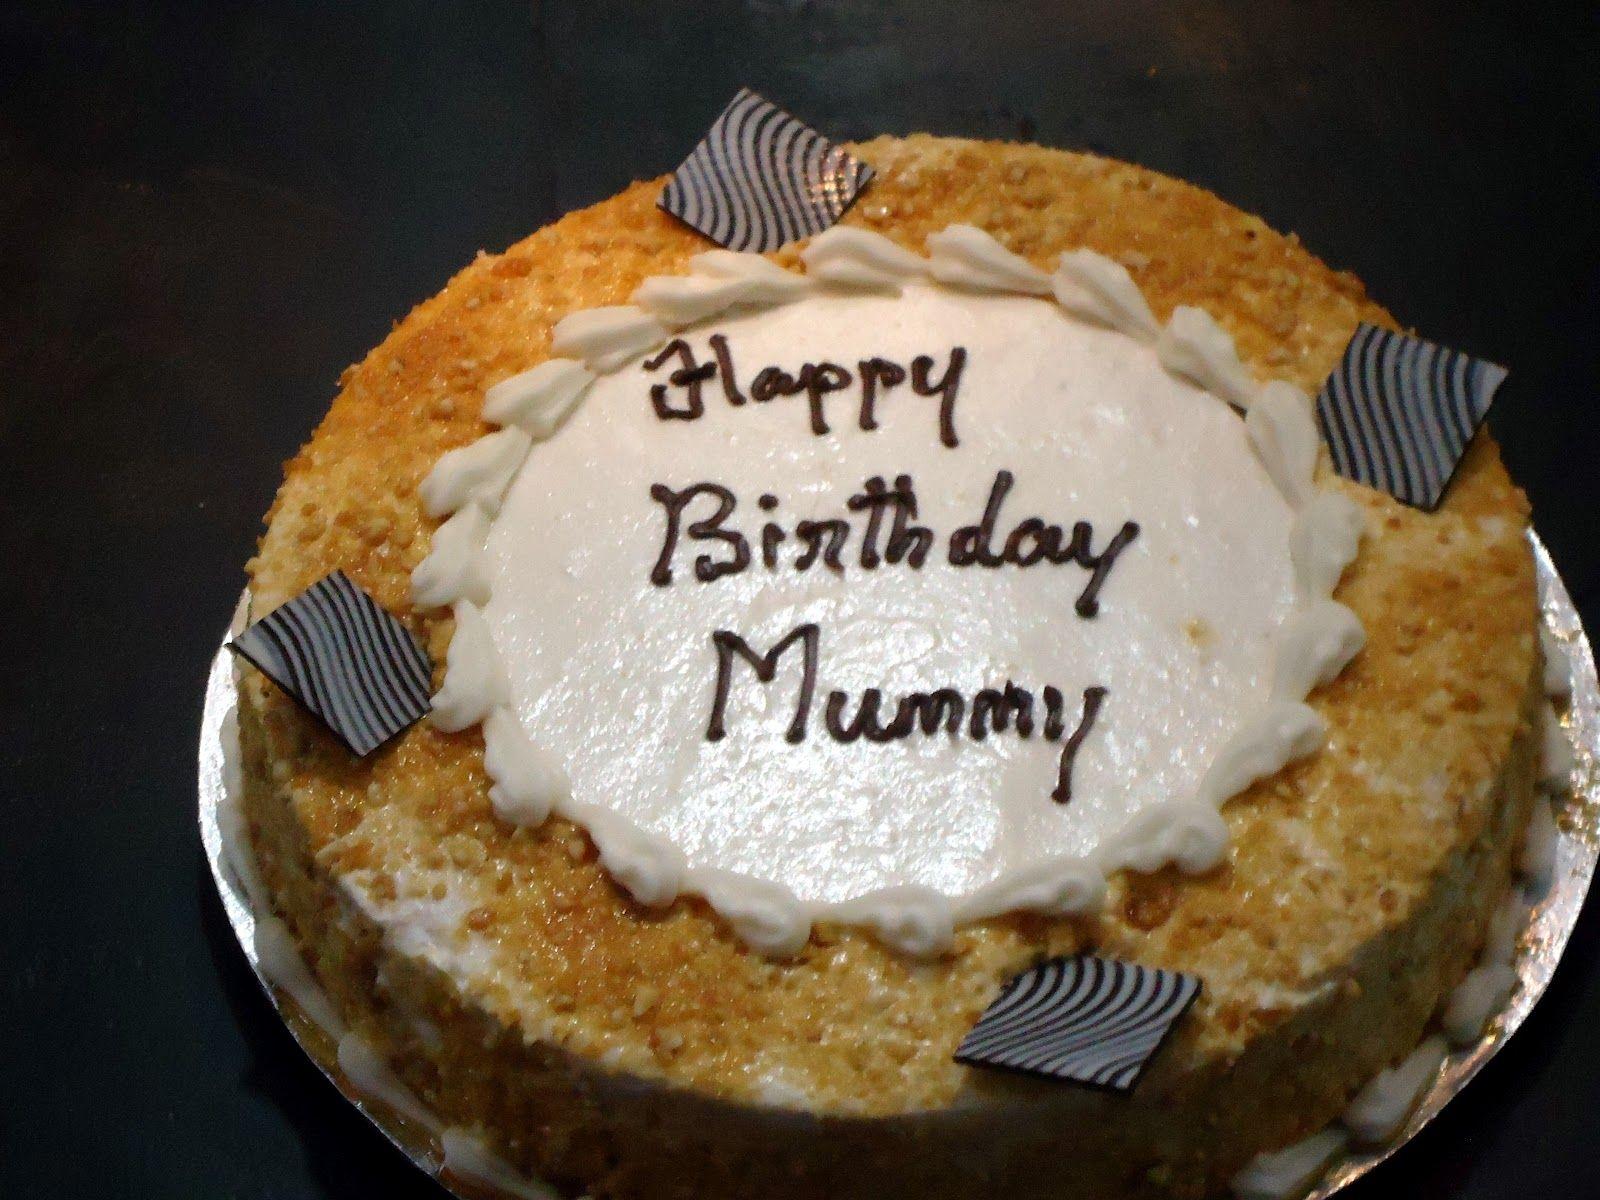 Happy Birthday Mummy!